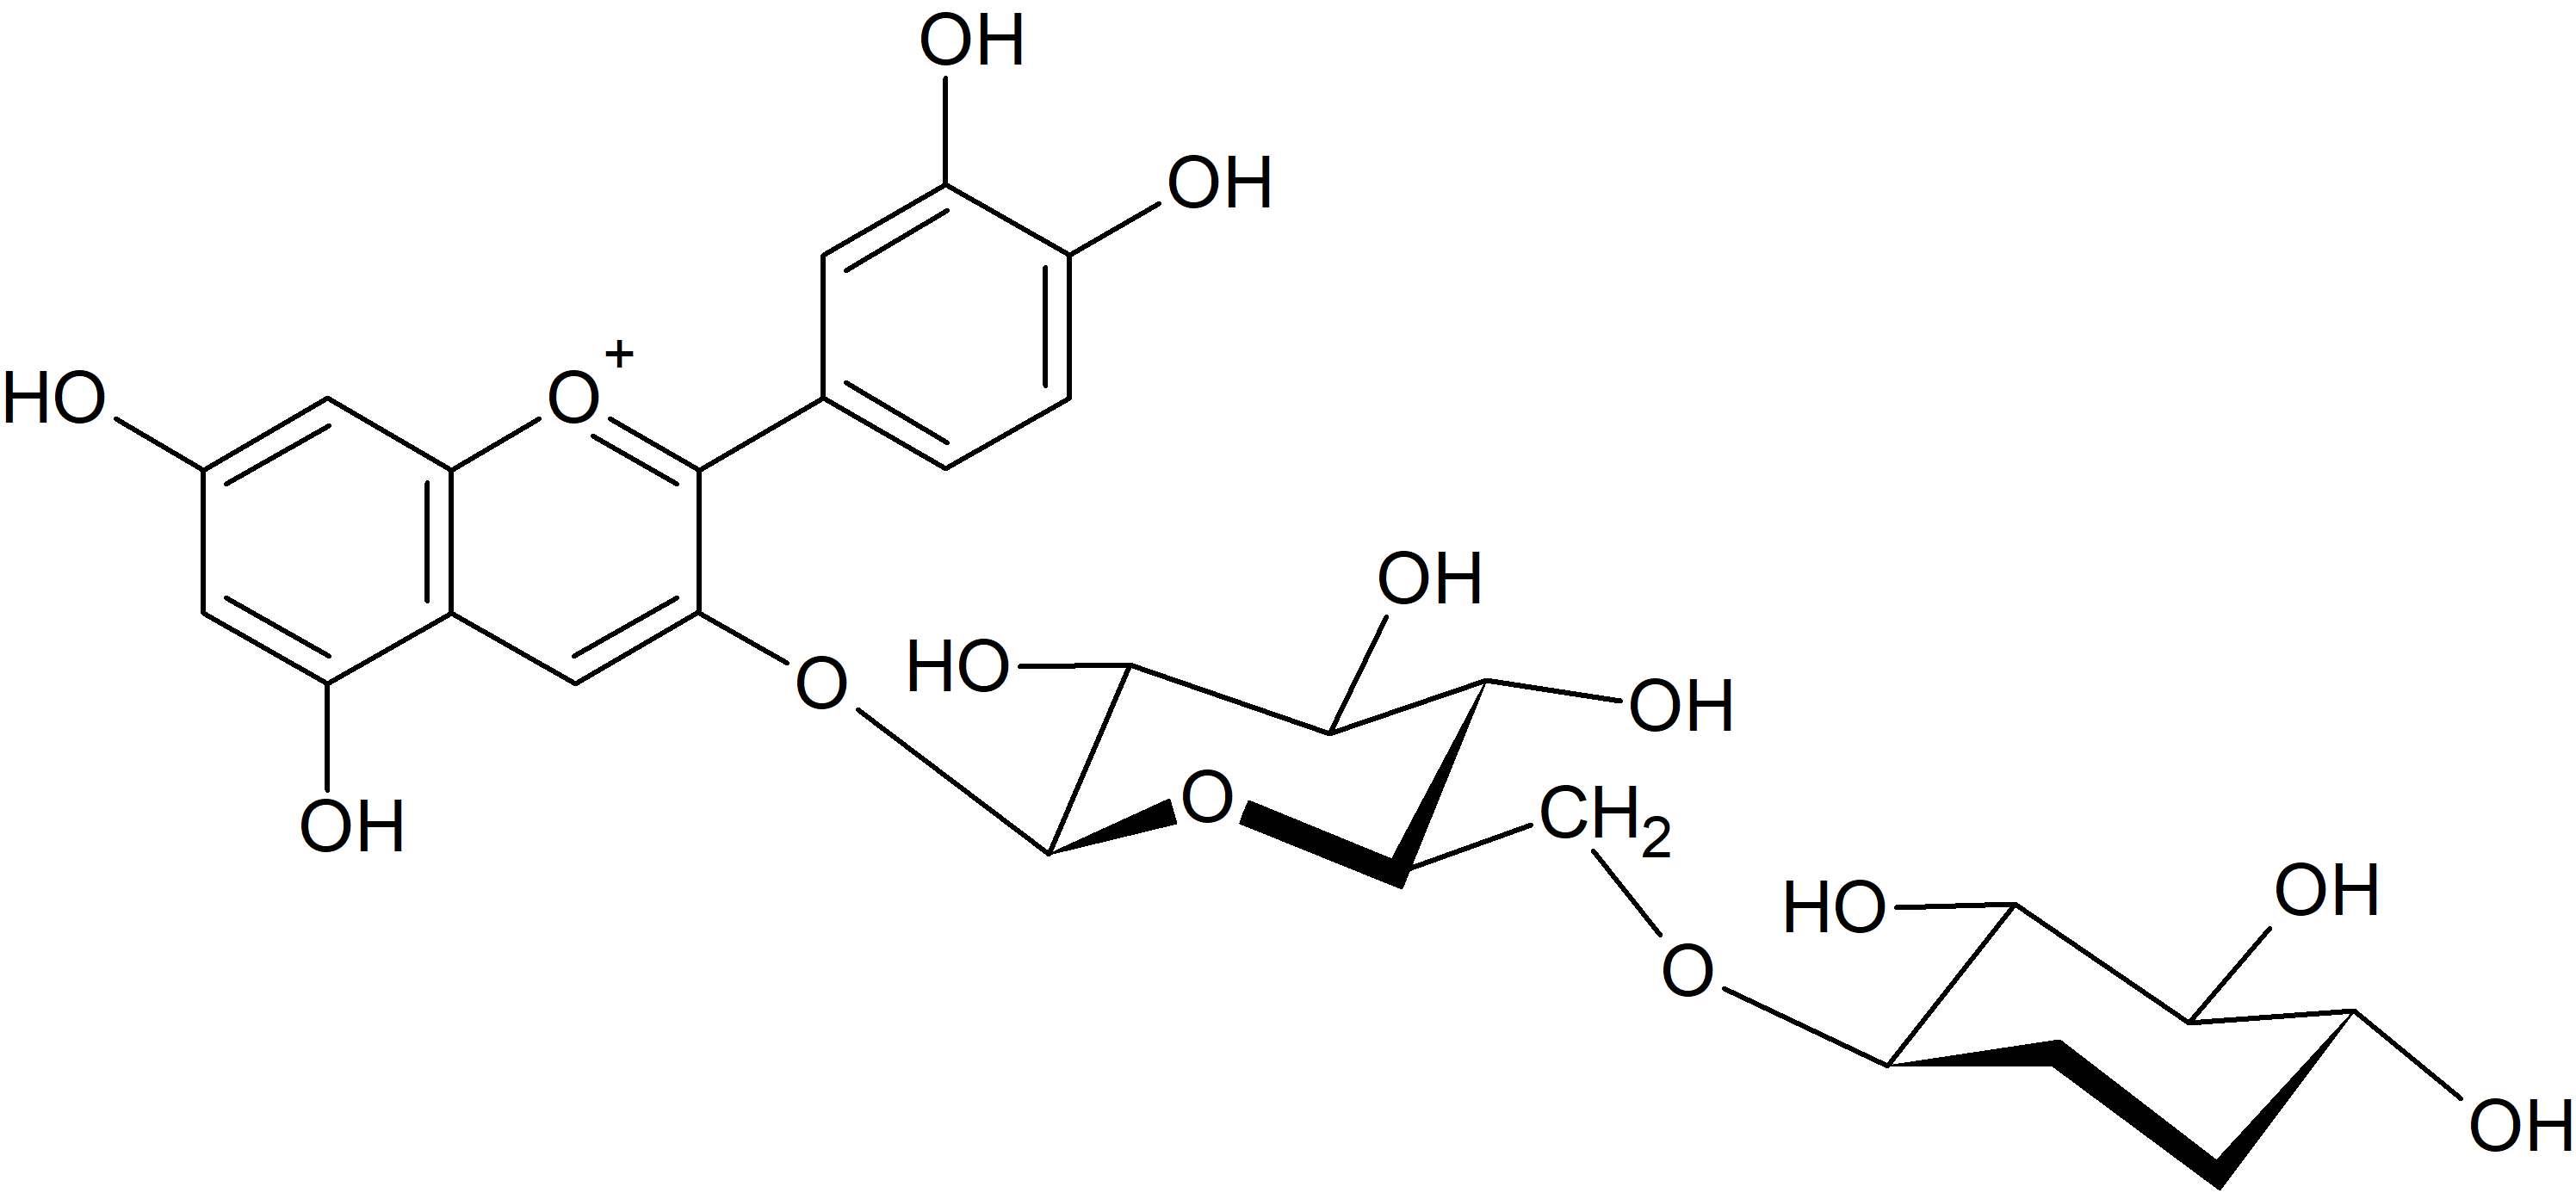 Cyanidin 3-O-xylosyl-(1→6)-glucoside